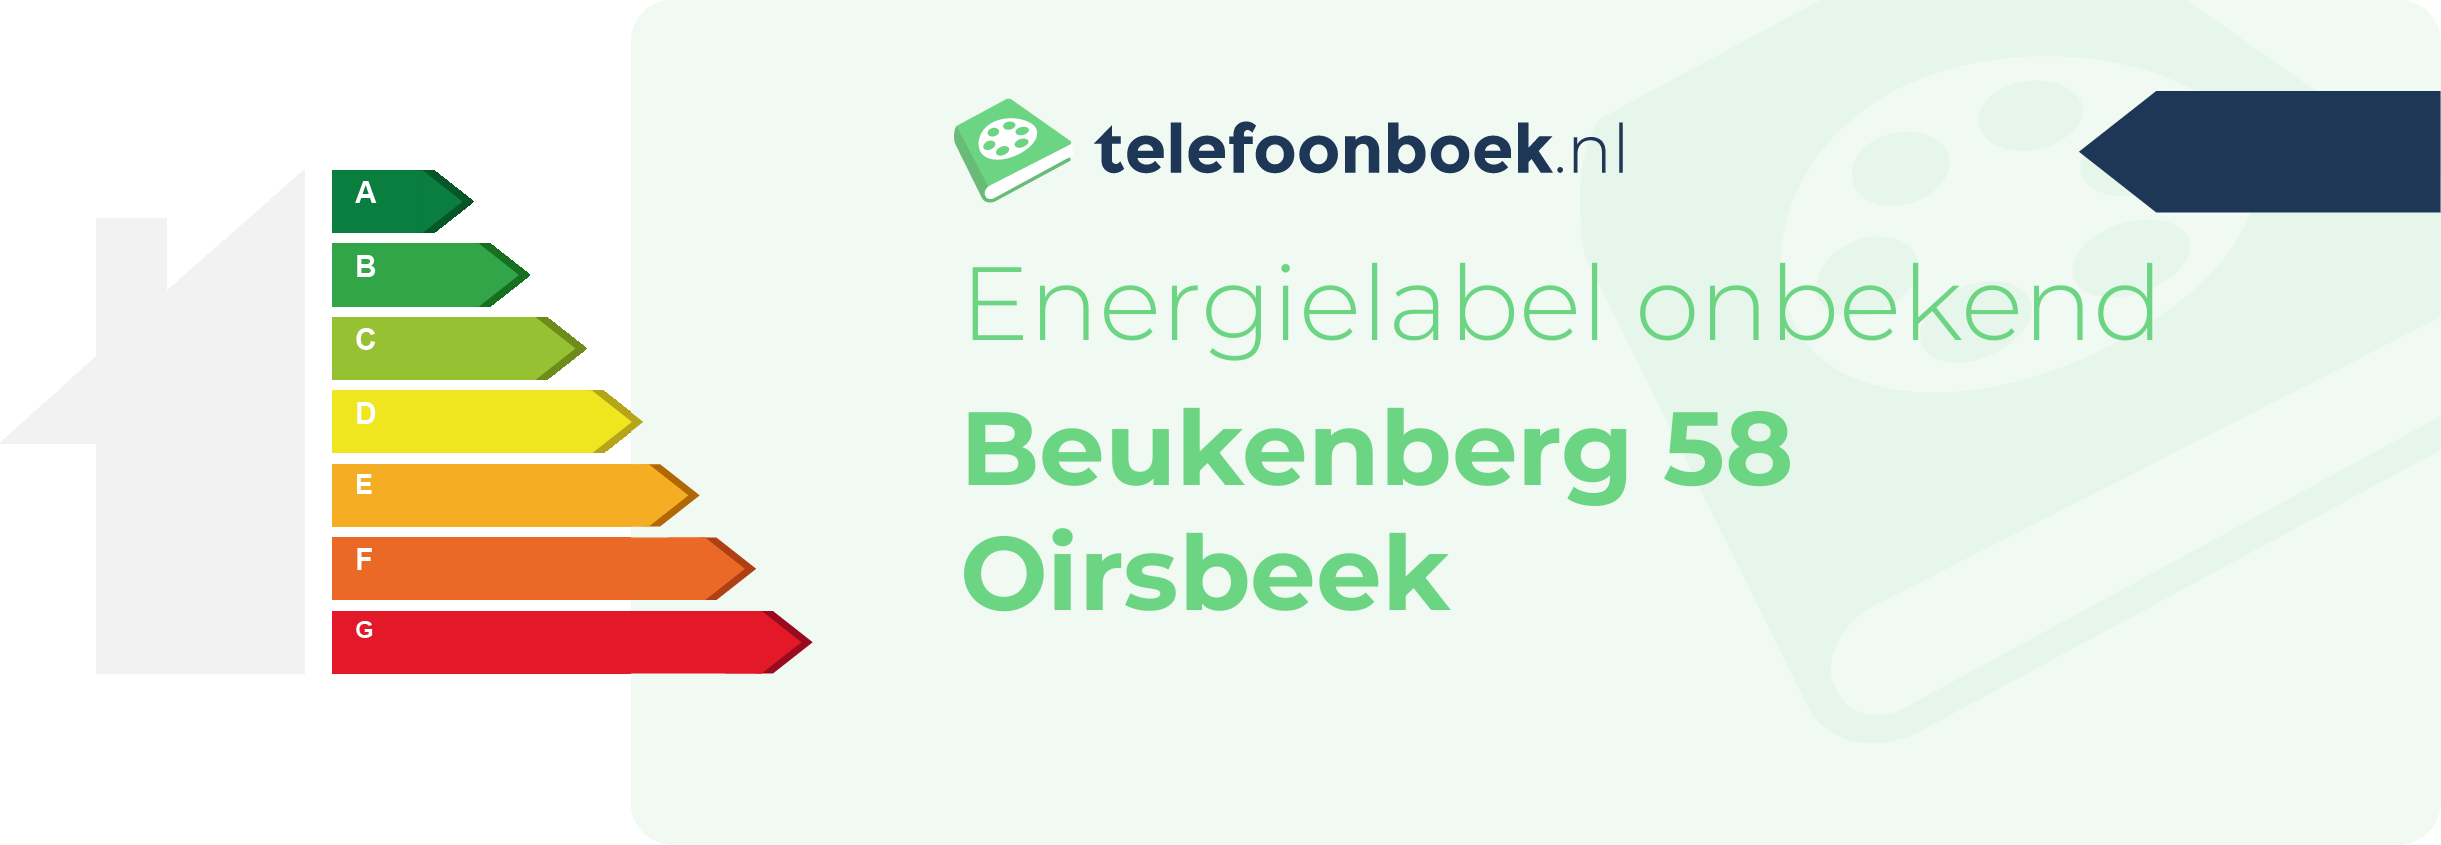 Energielabel Beukenberg 58 Oirsbeek